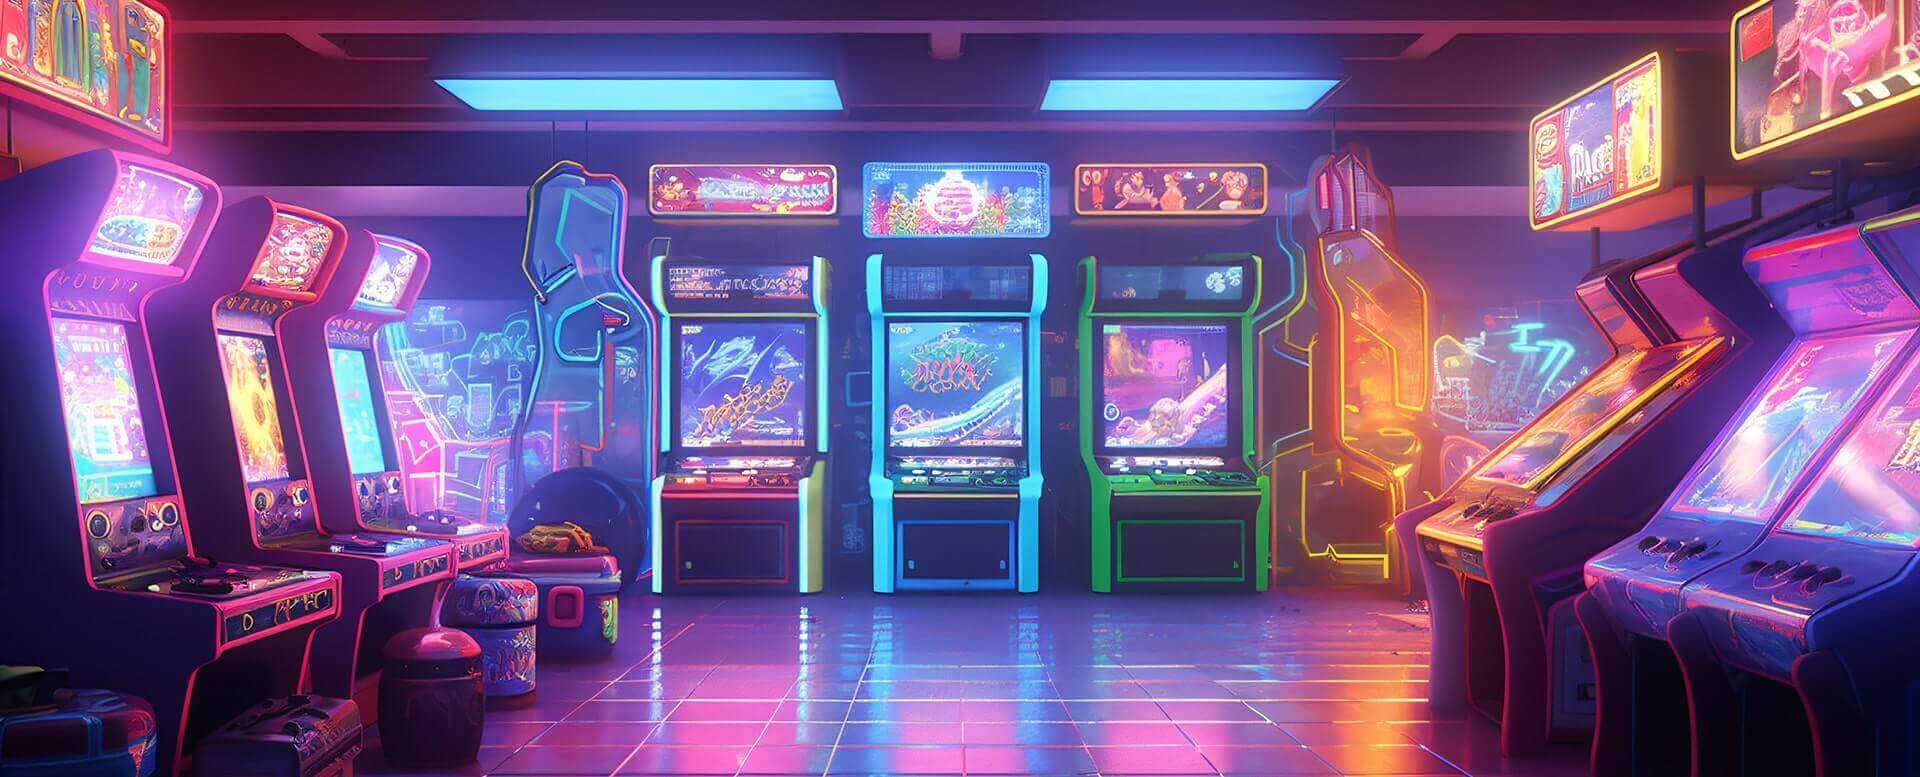 arcade-parallax